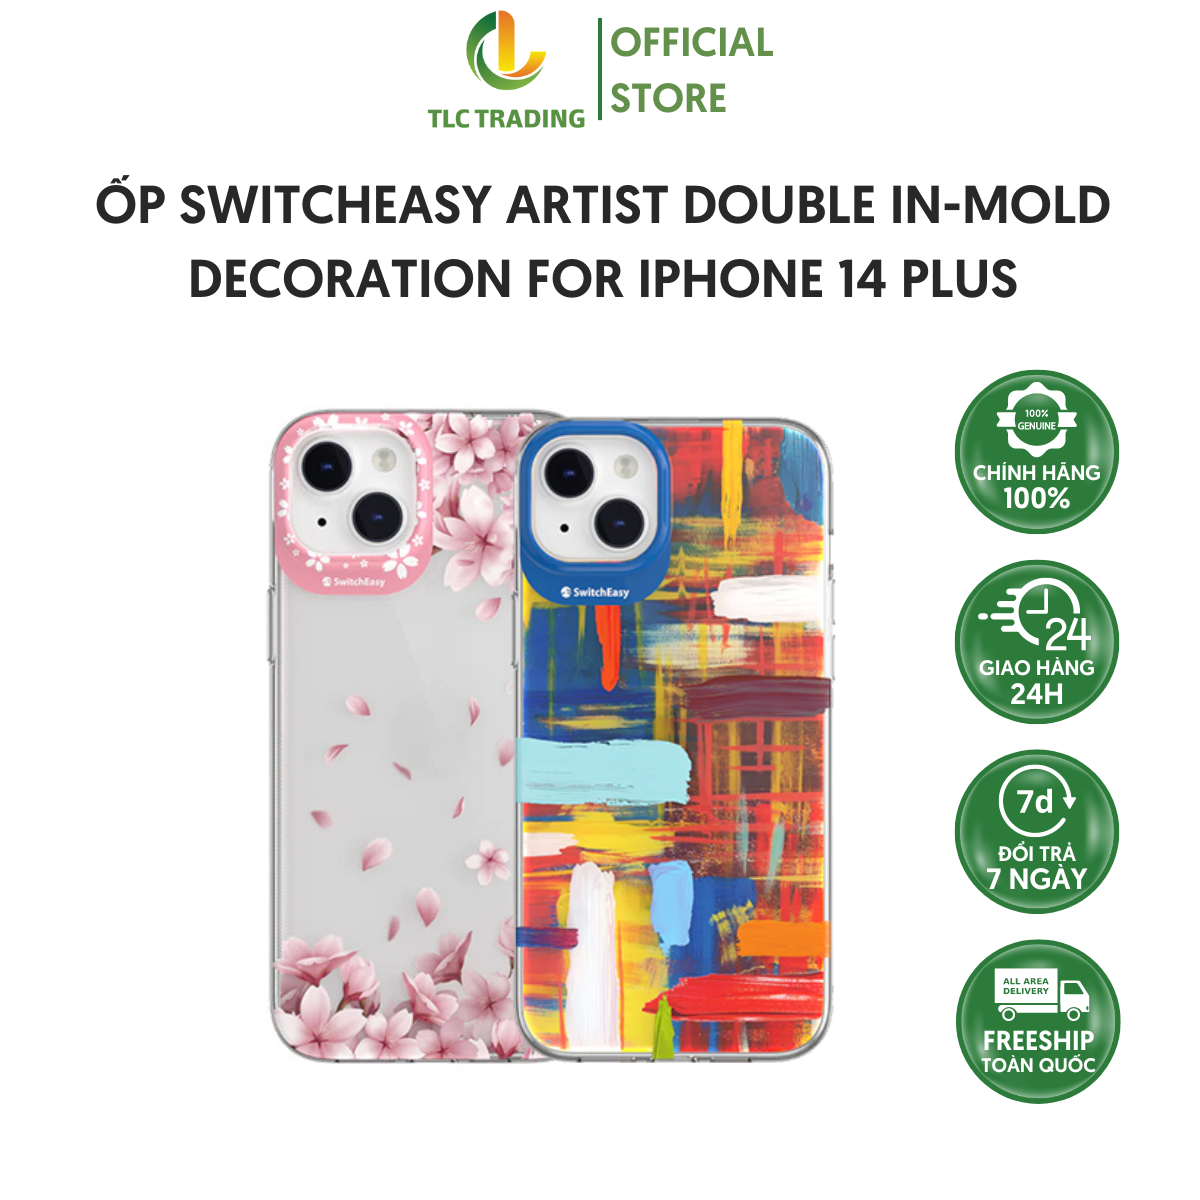 Ốp Switcheasy Artist Double In-Mold Decoration dành cho iPhone 14/ 14 Plus/ 14 Pro/ 14 Pro Max - Hàng chính hãng